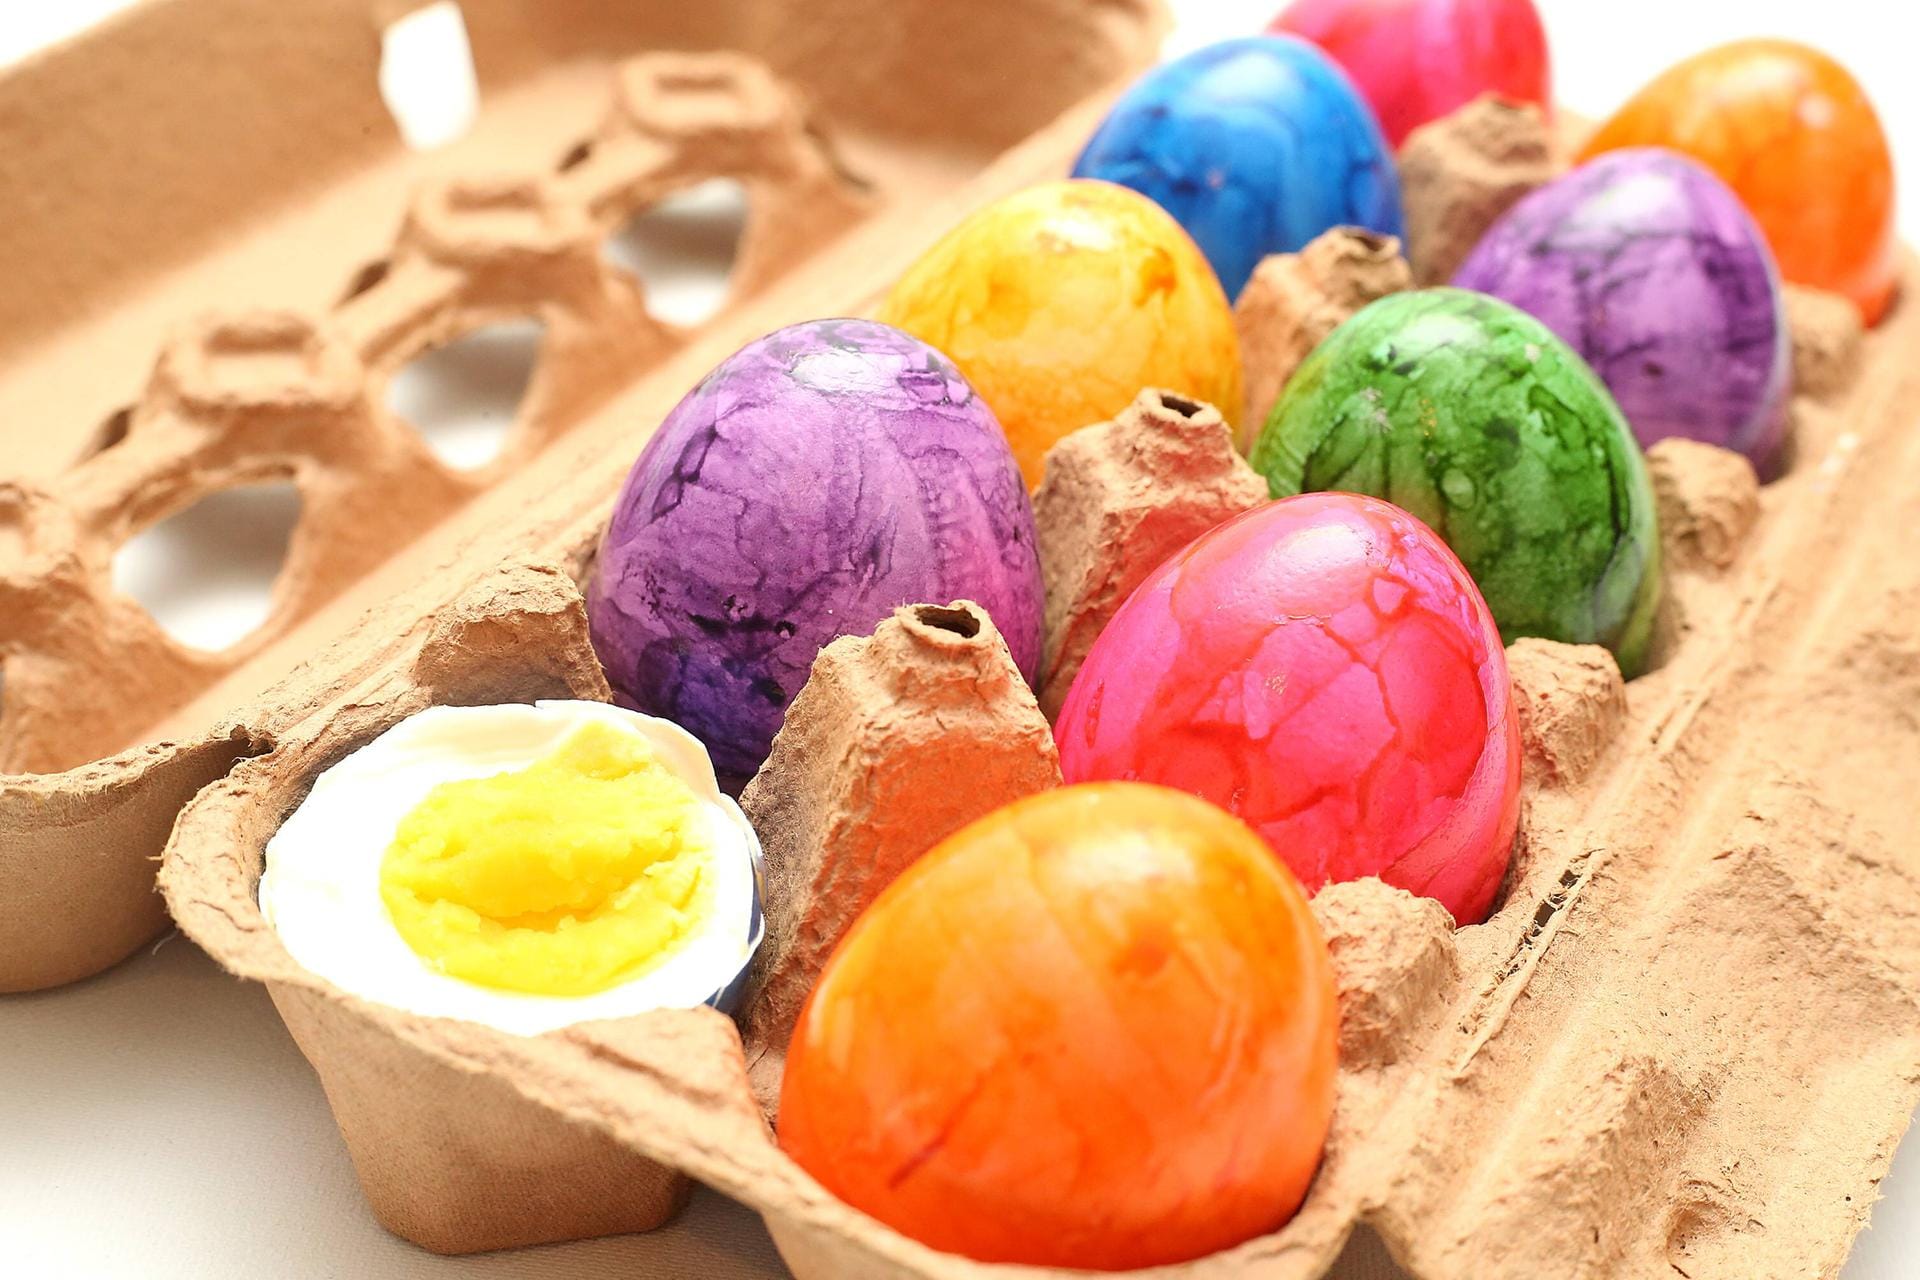 Eierkarton mit Ostereiern: Bunt gefärbte Eier sind eine beliebte Dekoration in der Osterzeit.